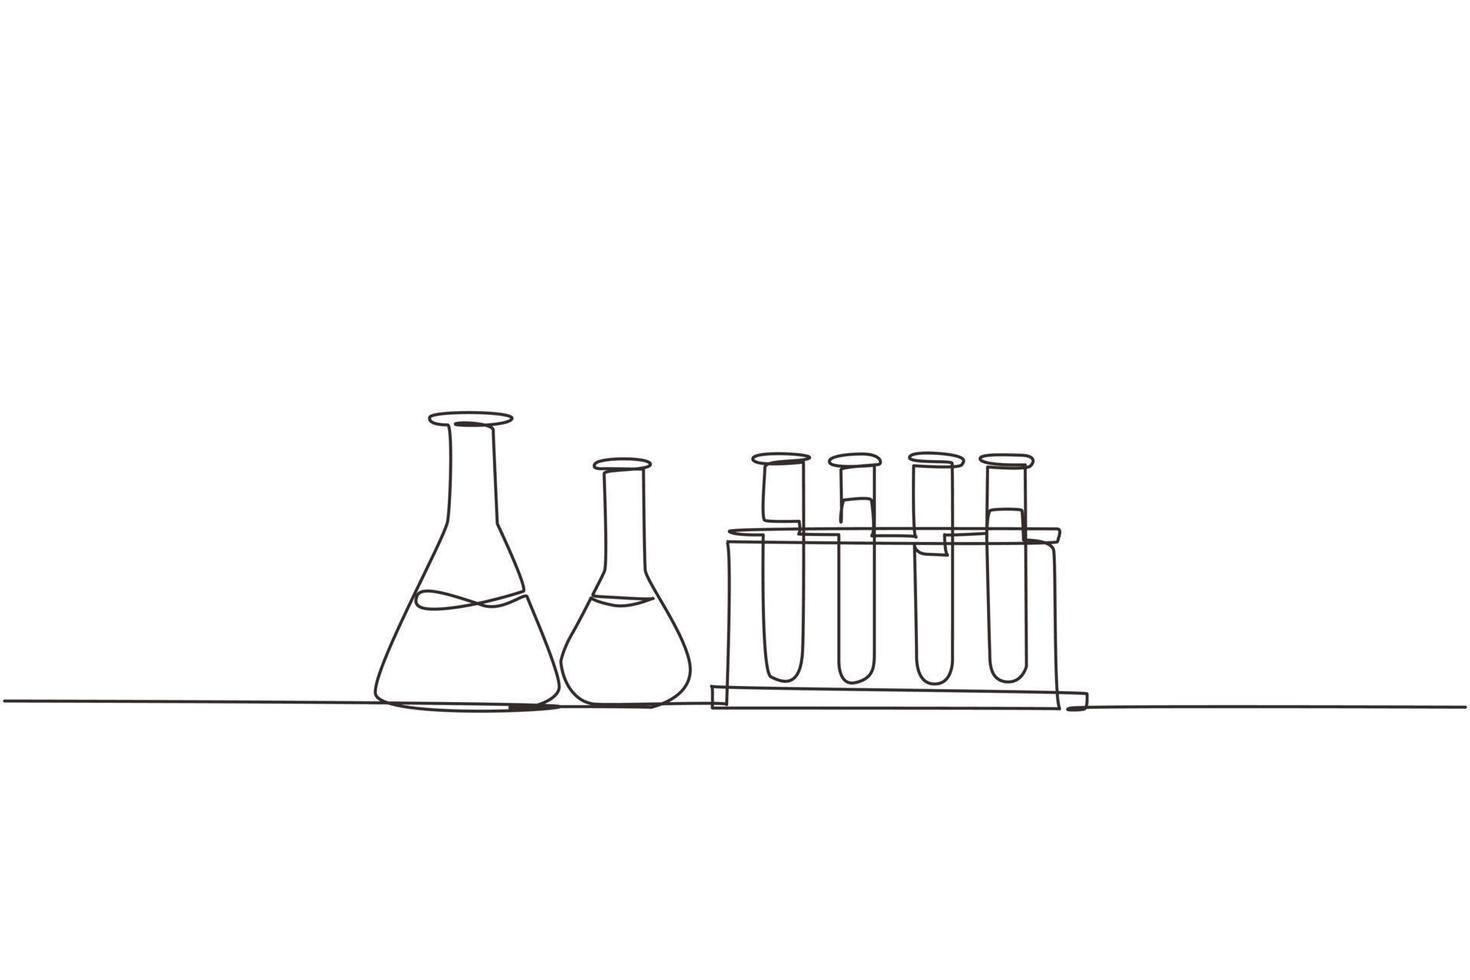 equipo de laboratorio de investigación química de dibujo de una sola línea.  cristalería de laboratorio de